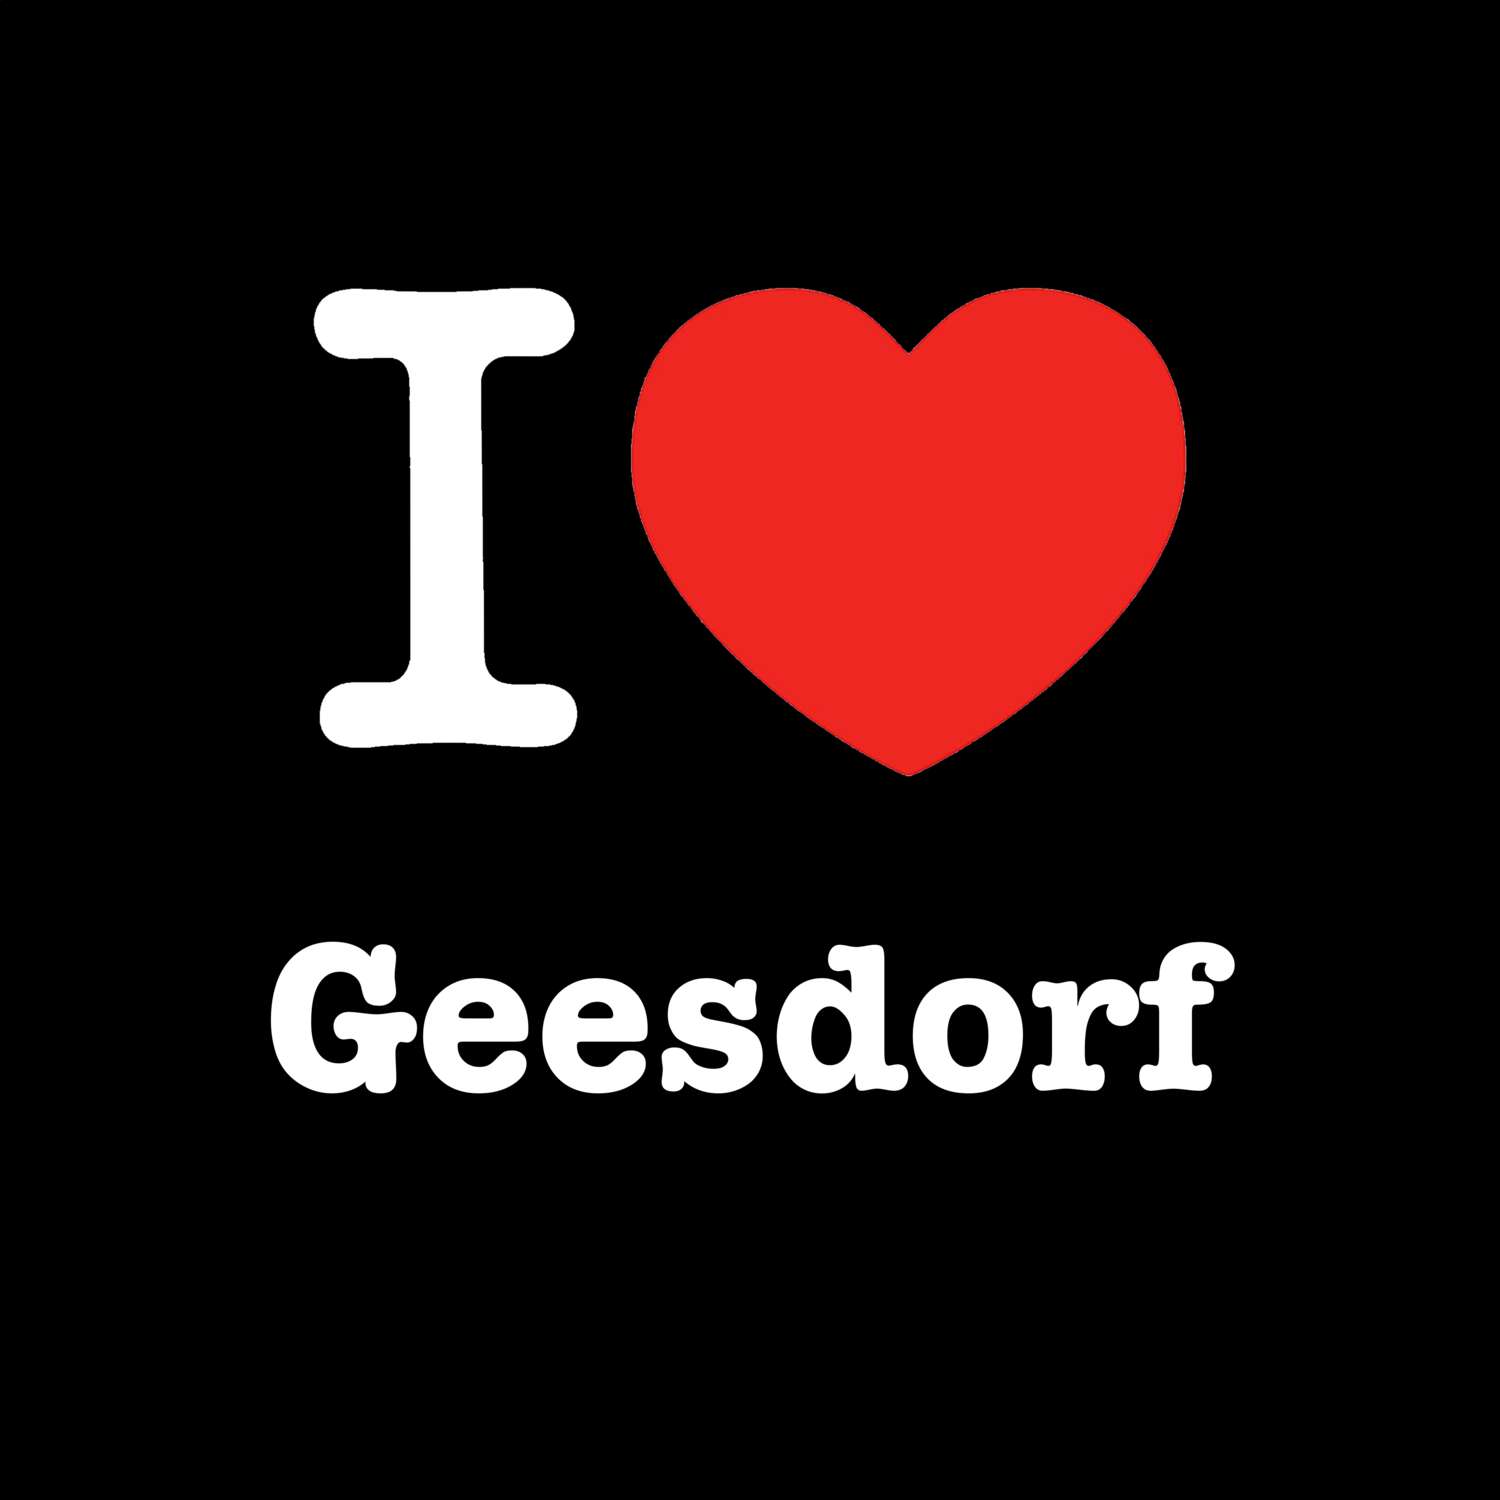 Geesdorf T-Shirt »I love«